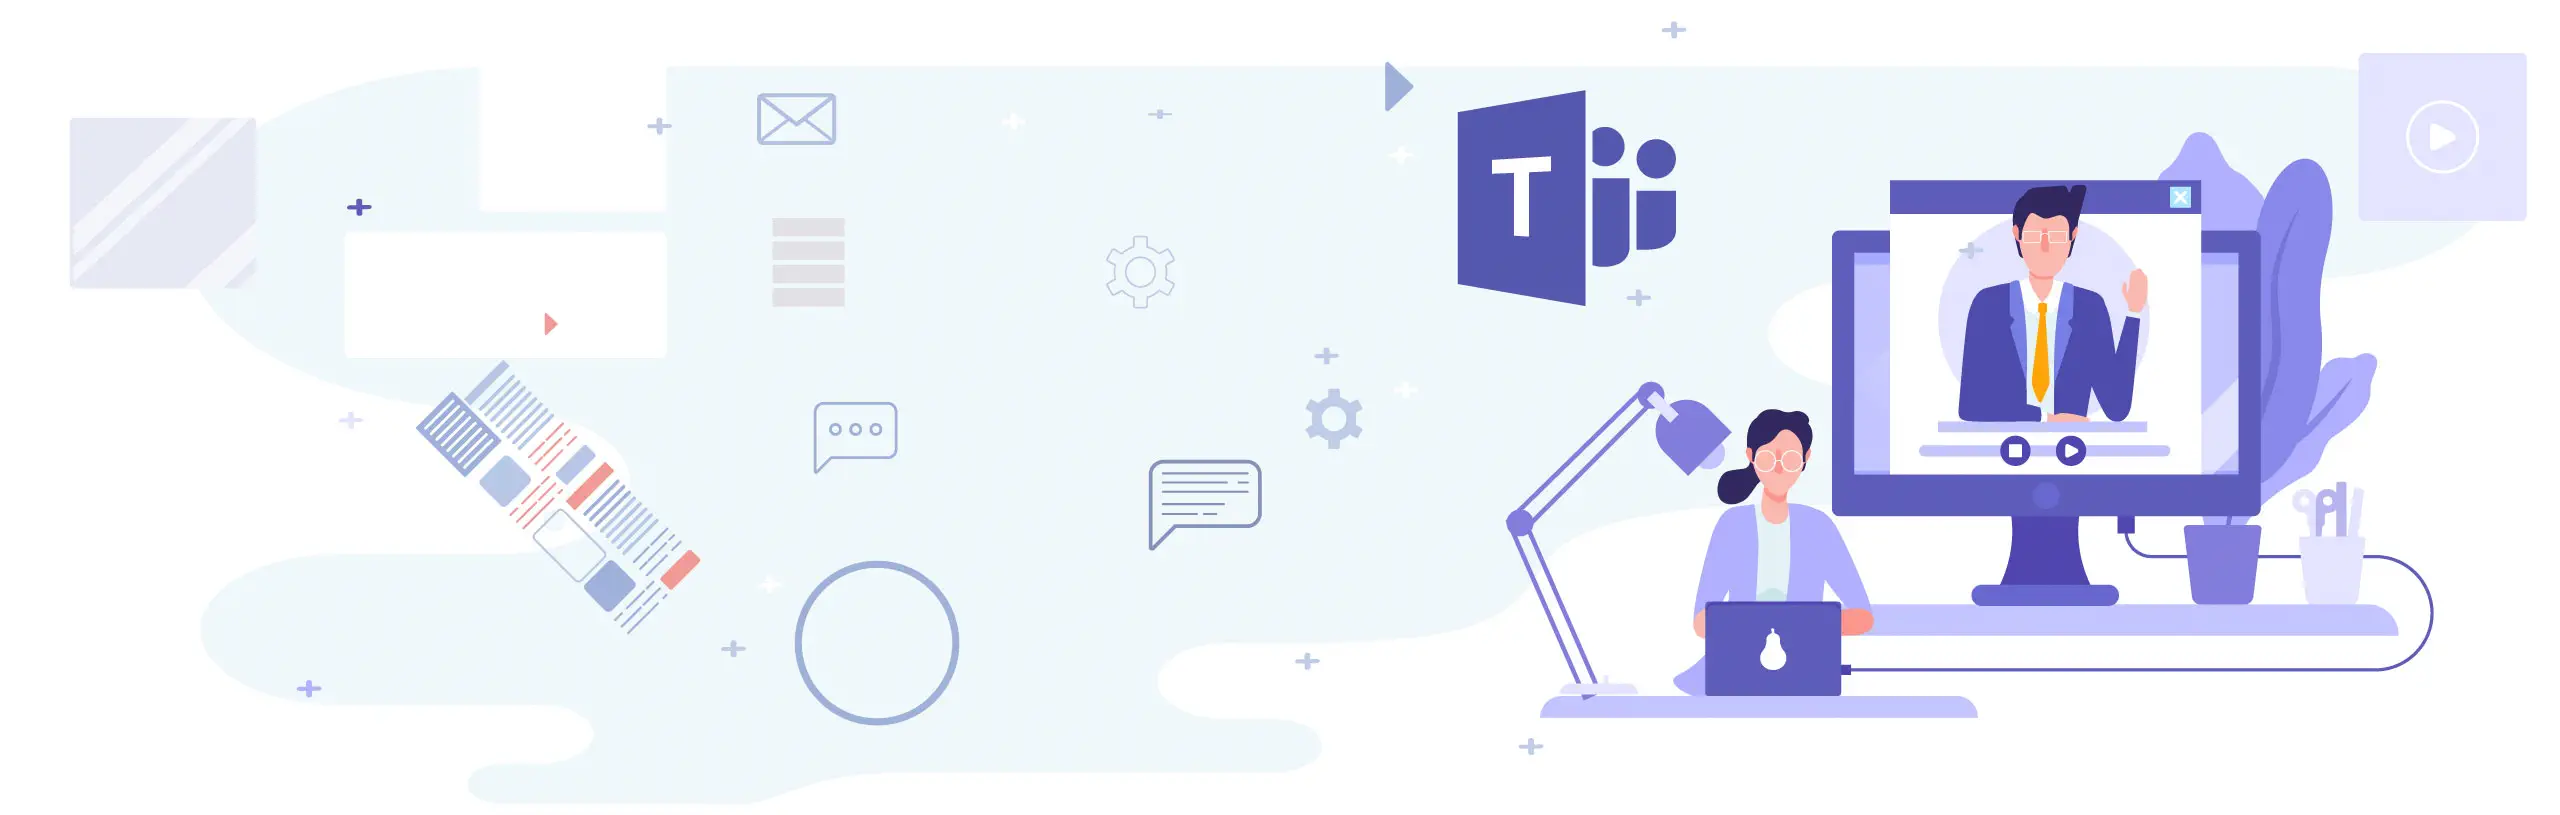 Implementación | Microsoft Teams